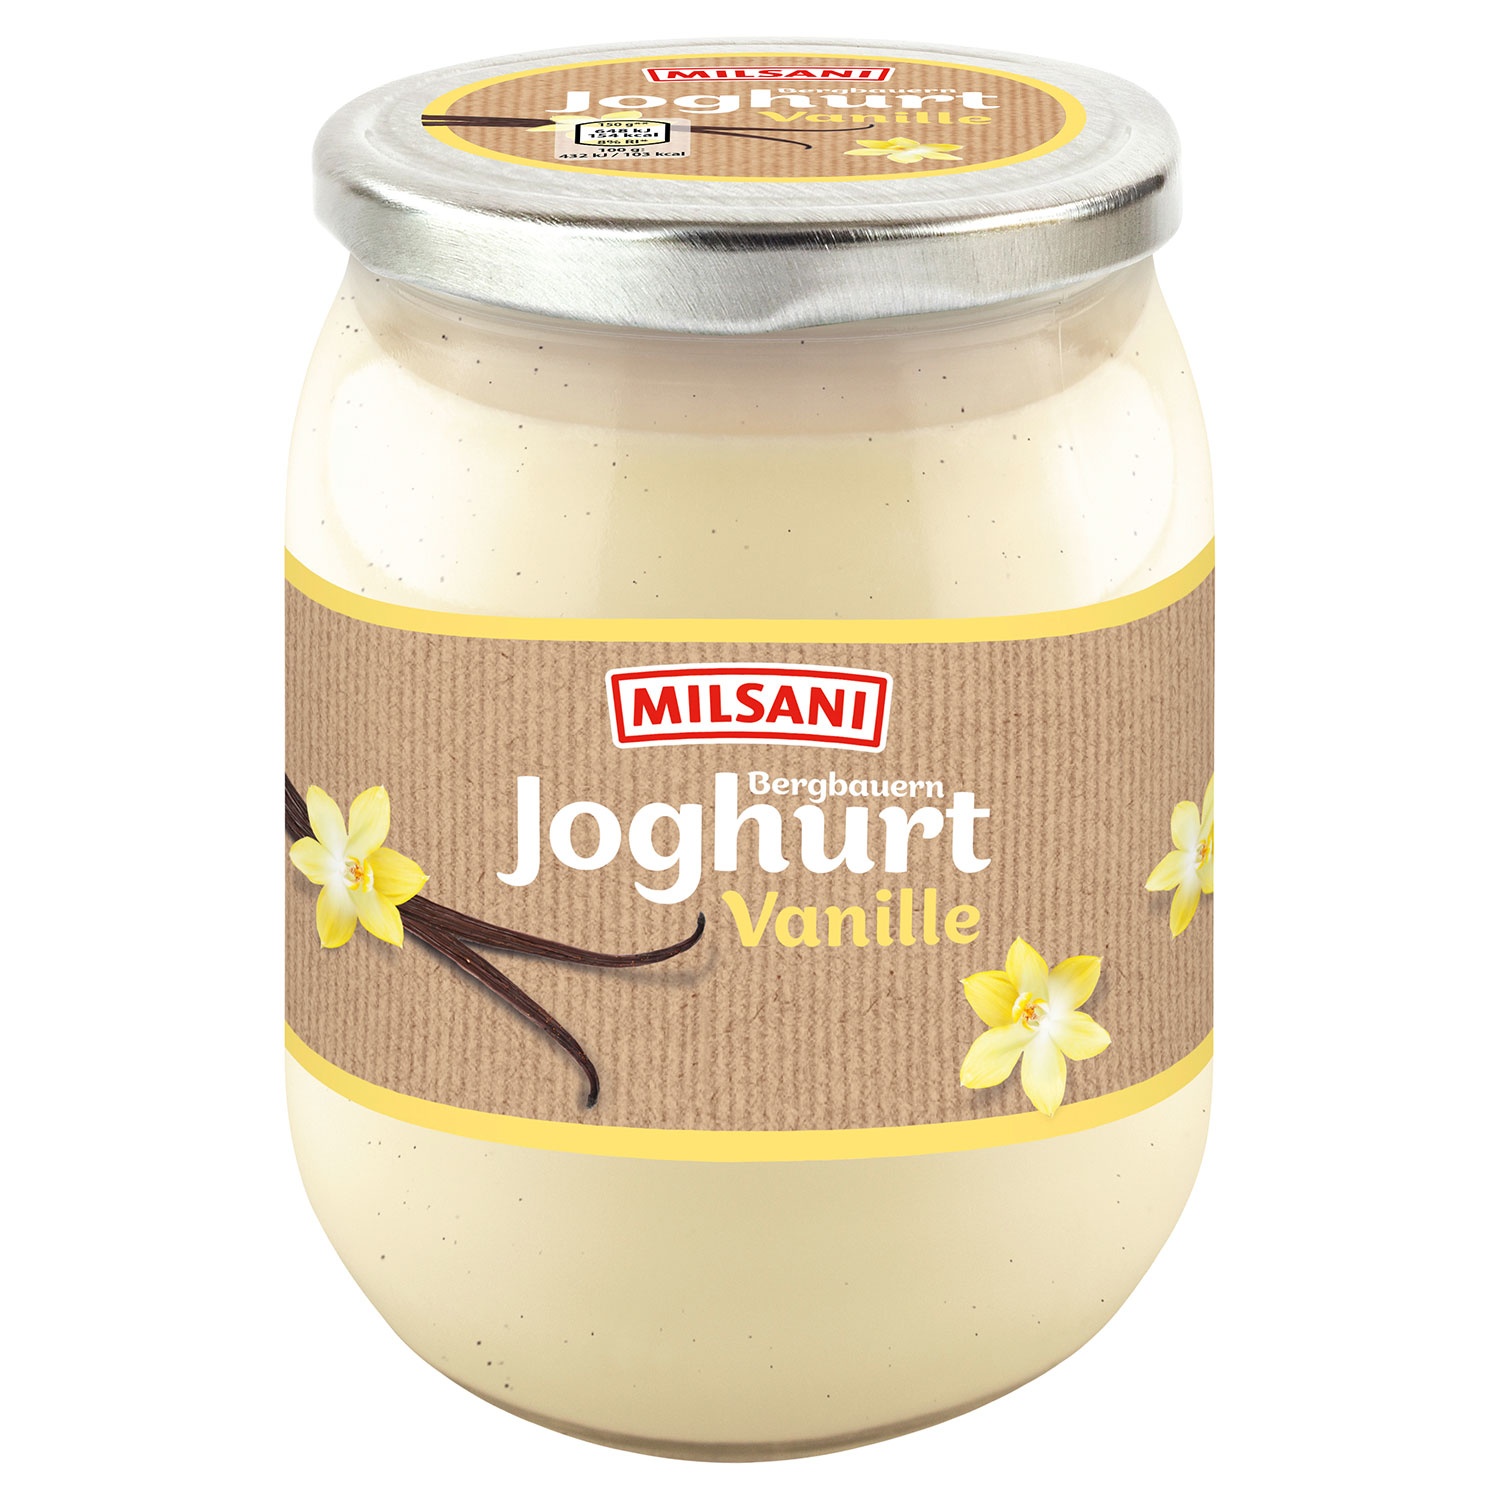 MILSANI Bergbauern-Joghurt 450 g, Vanille